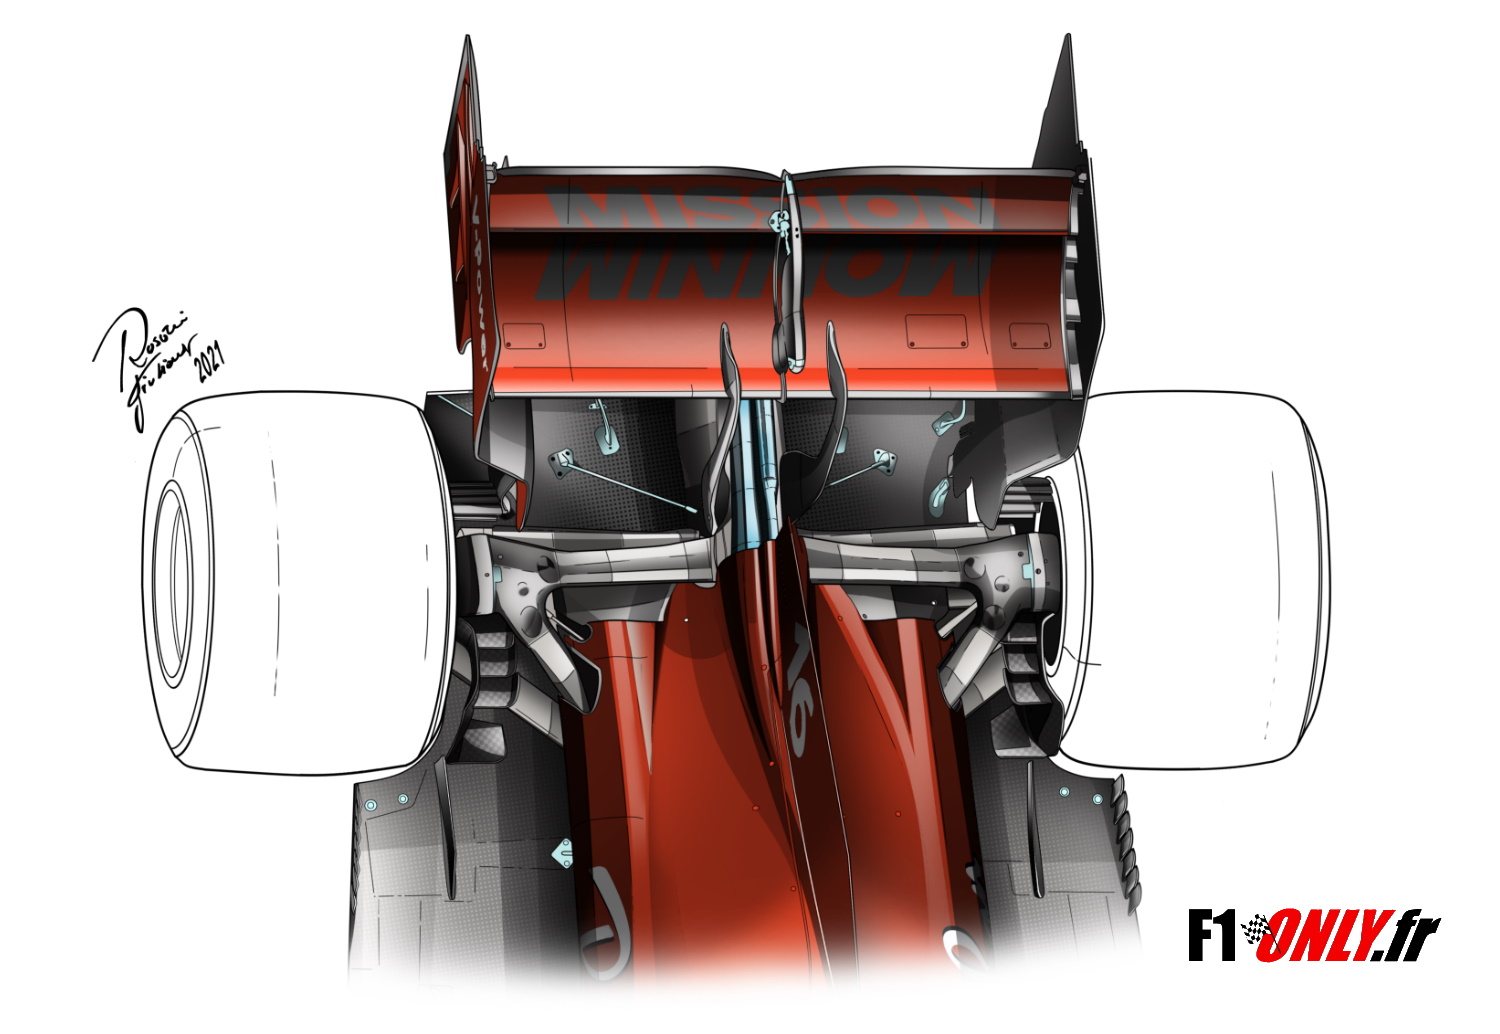 F1 - Technique F1 : Ferrari valide son nouveau système hybride